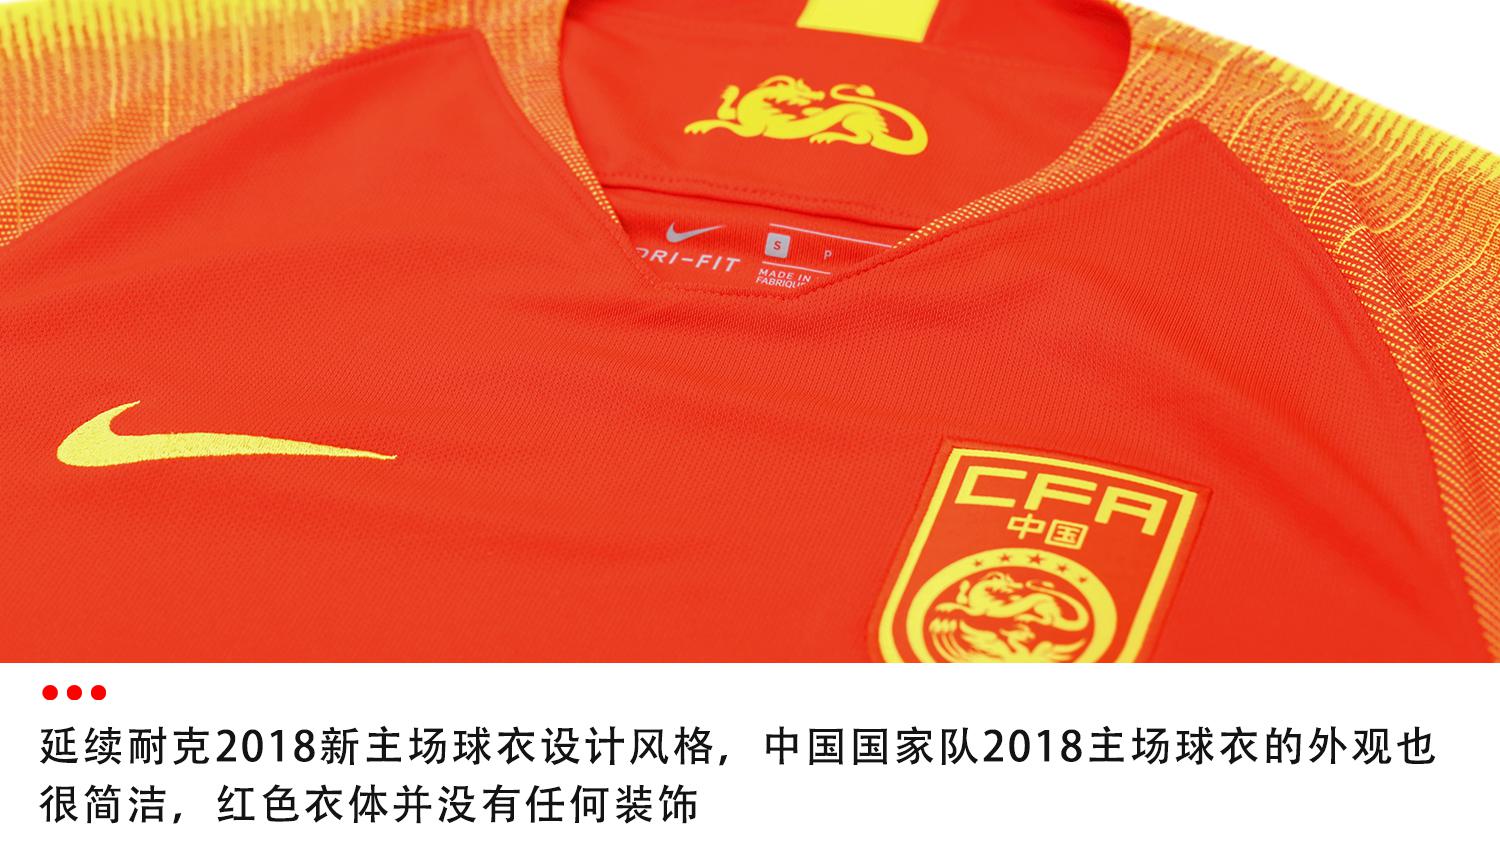 2018中超球衣郑 Nike中国国家队2018主场球衣球迷版(7)